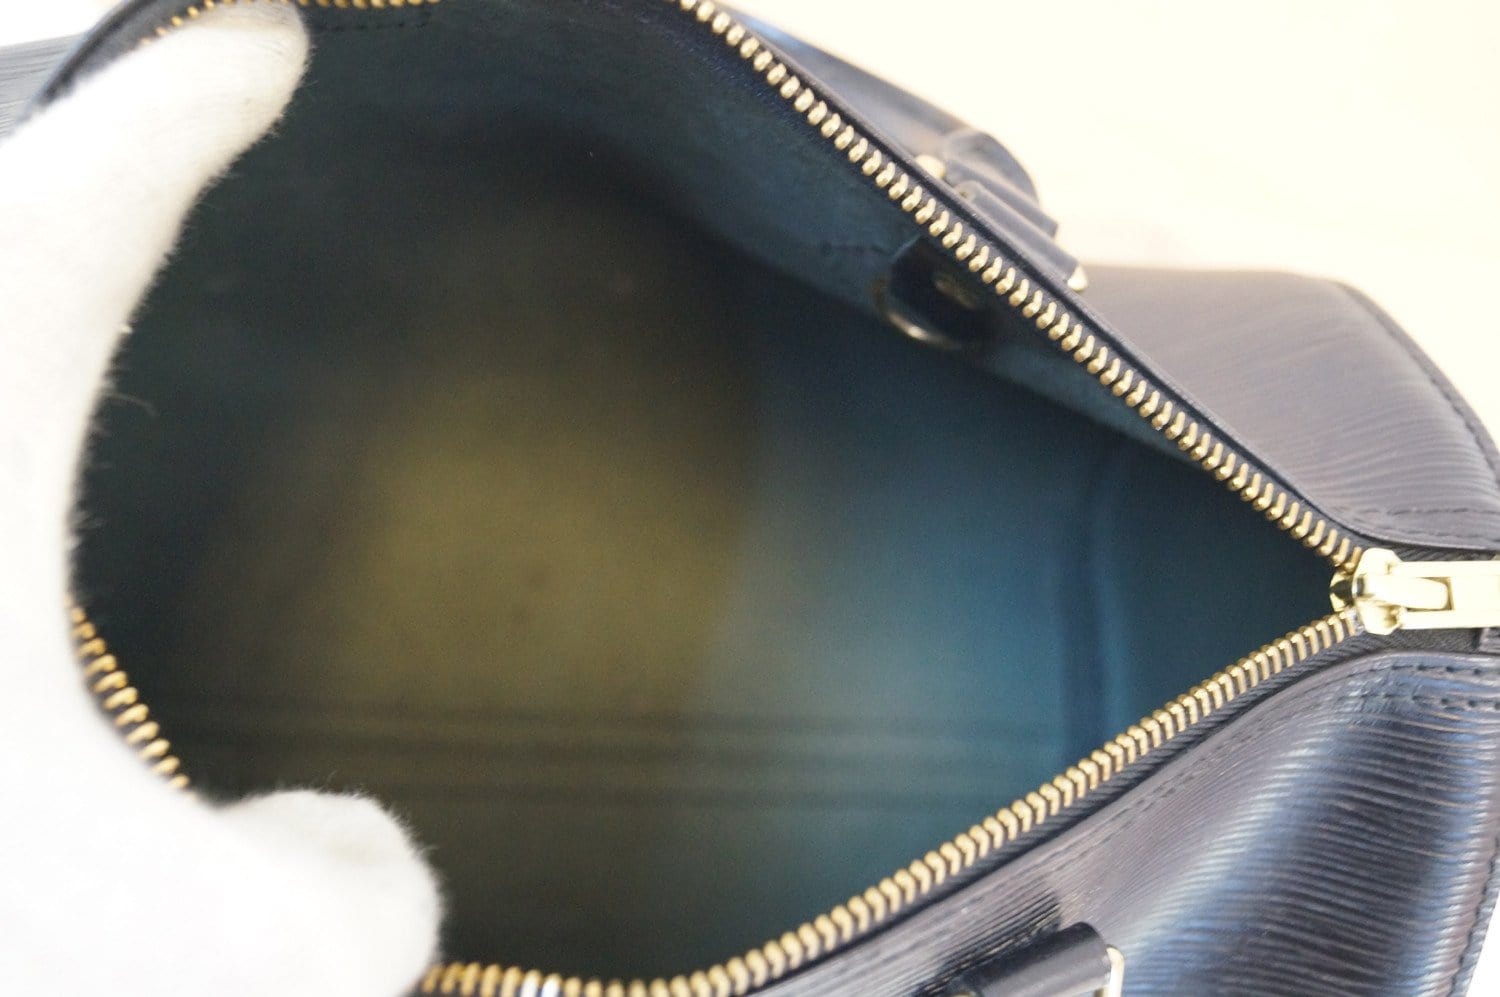 Louis Vuitton Black Epi Leather Speedy 25 Handbag